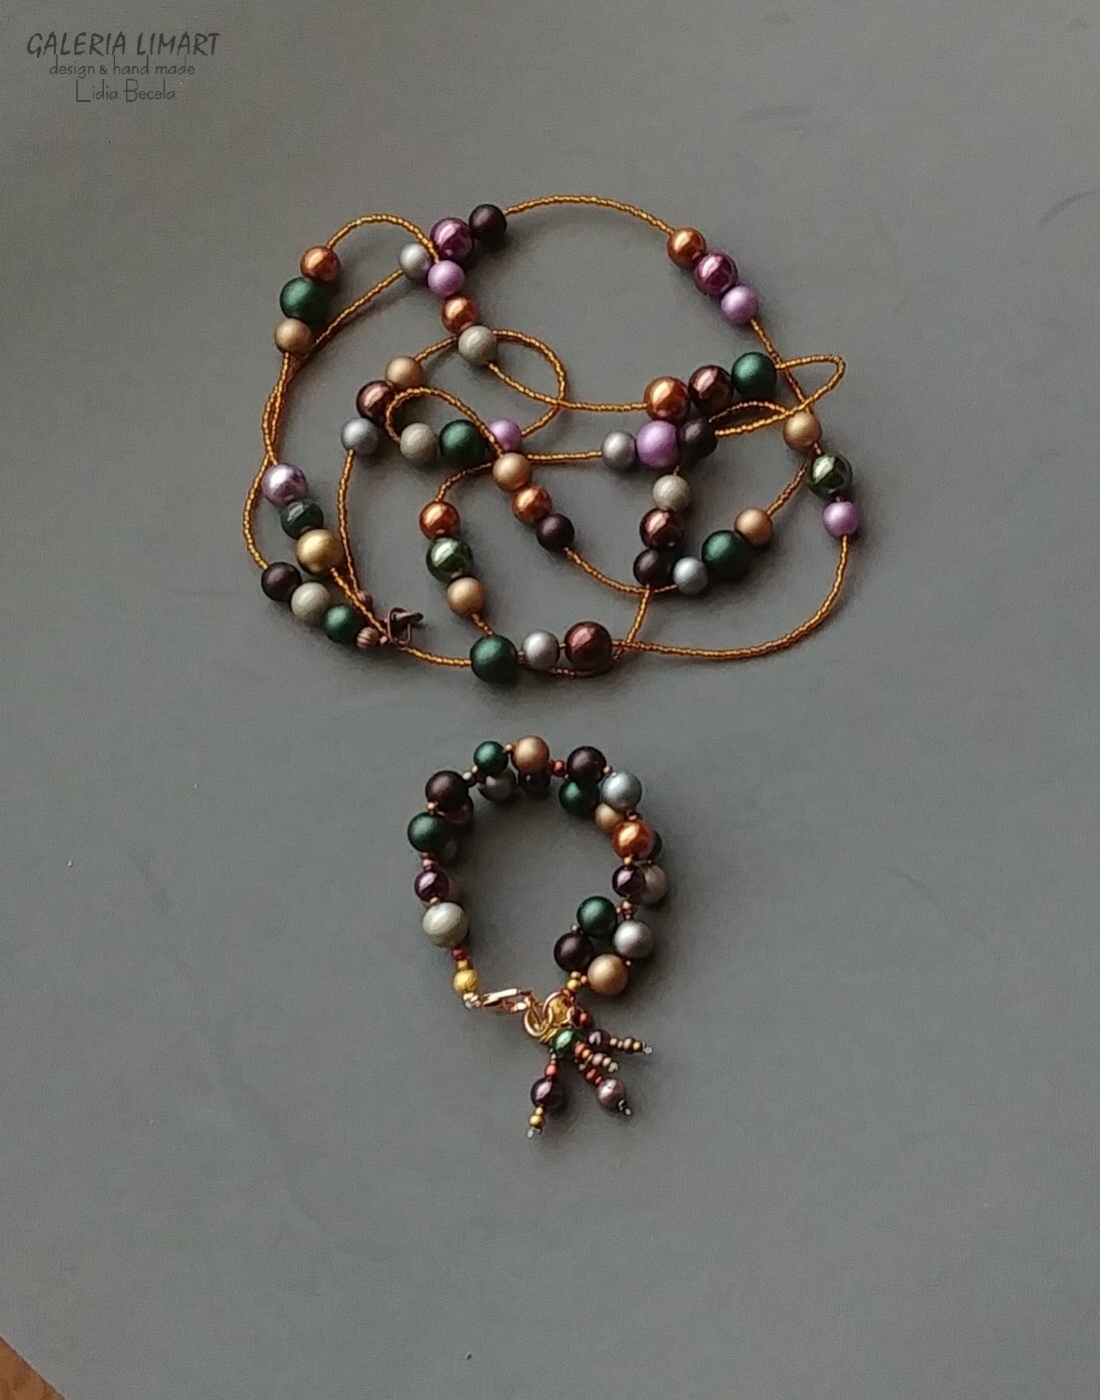 Autorska niebanalna kompozycja naszyjnika z mixu bajecznie kolorowych szklanych pereł w pięknych kolorach jesieni